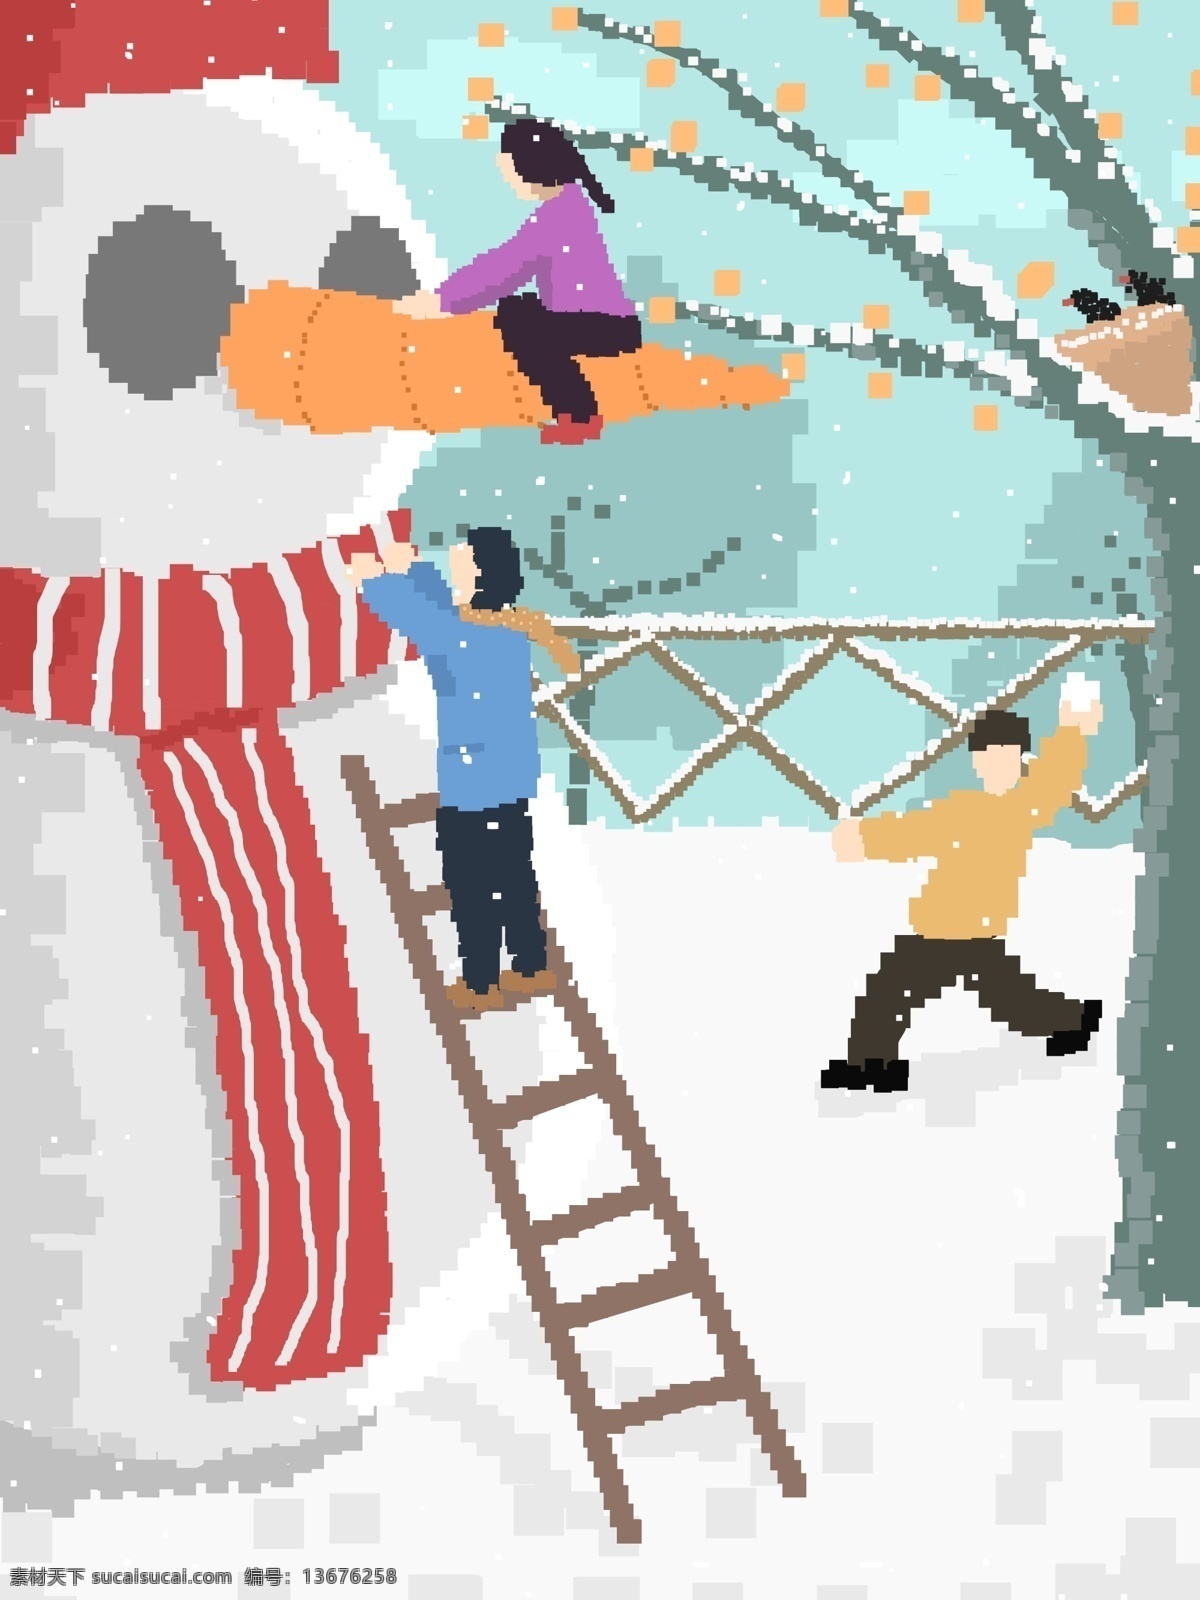 堆 雪人 打雪仗 像素 画 原创 插画 冬天 下雪 清新 壁纸 堆雪人 配图